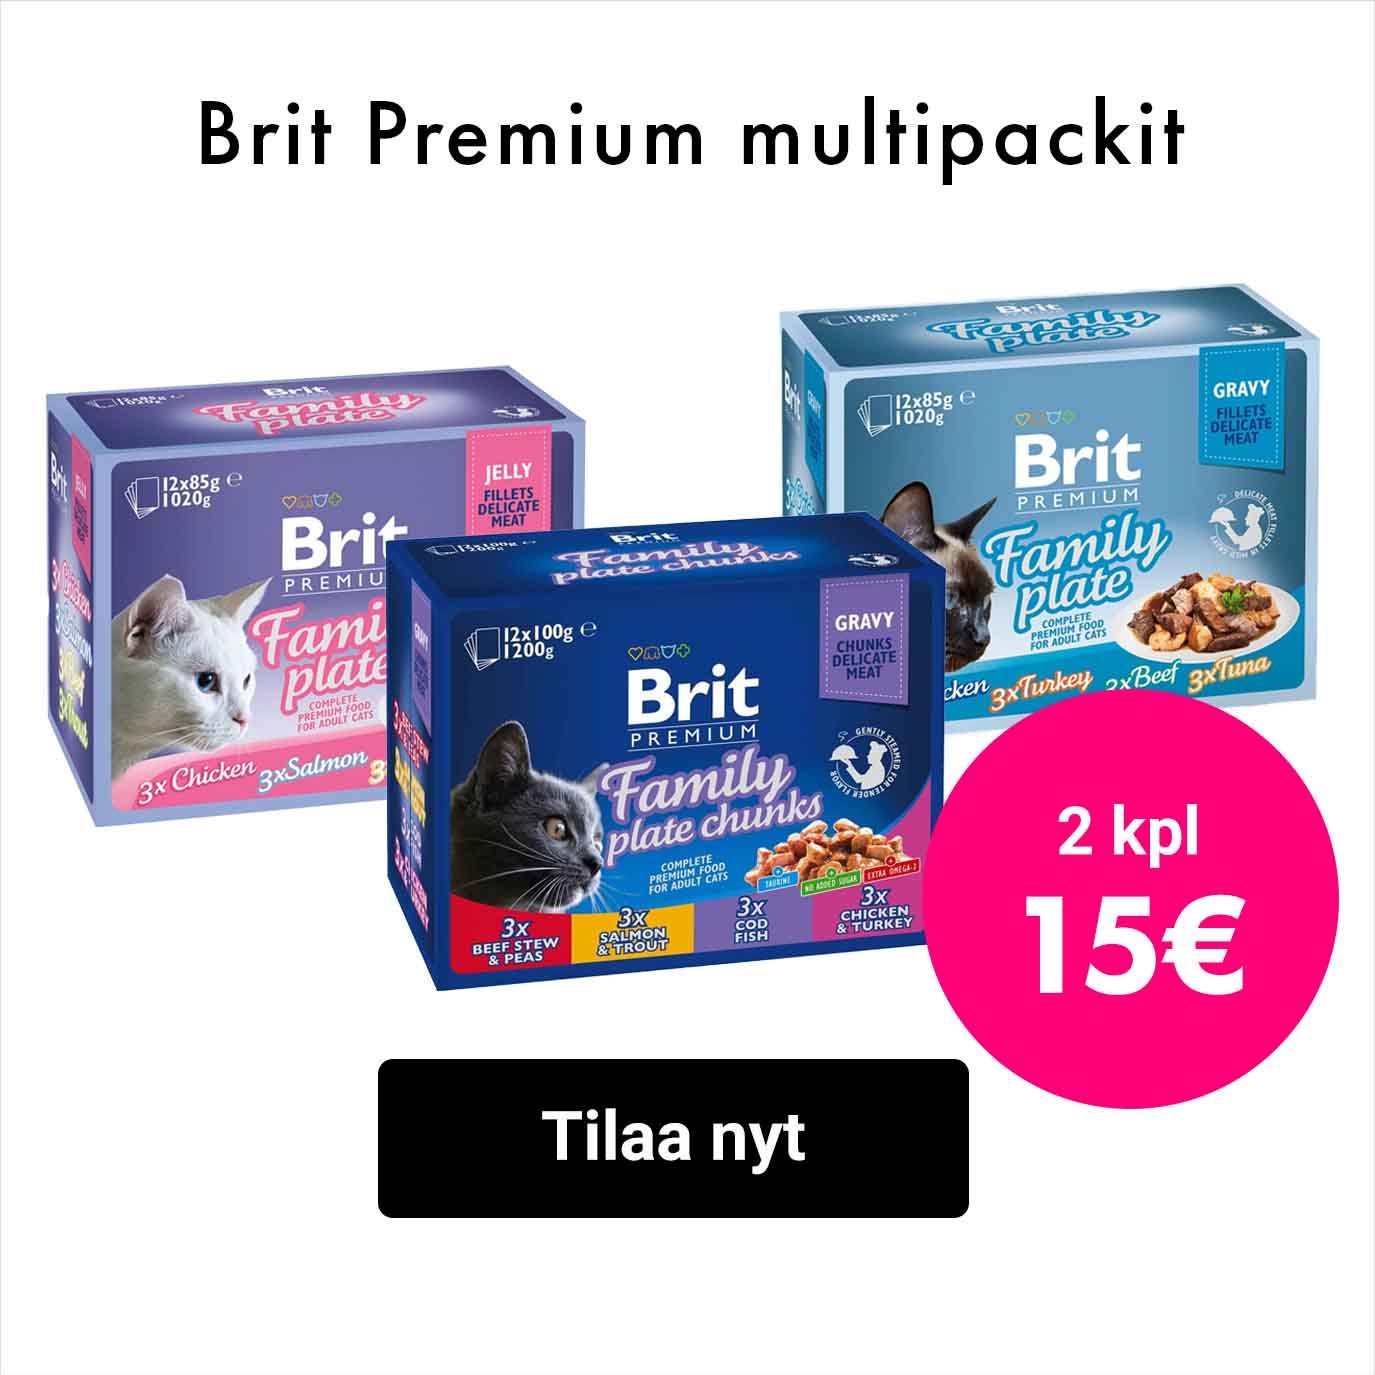 Brit Premium multipackit: 2kpl 15€